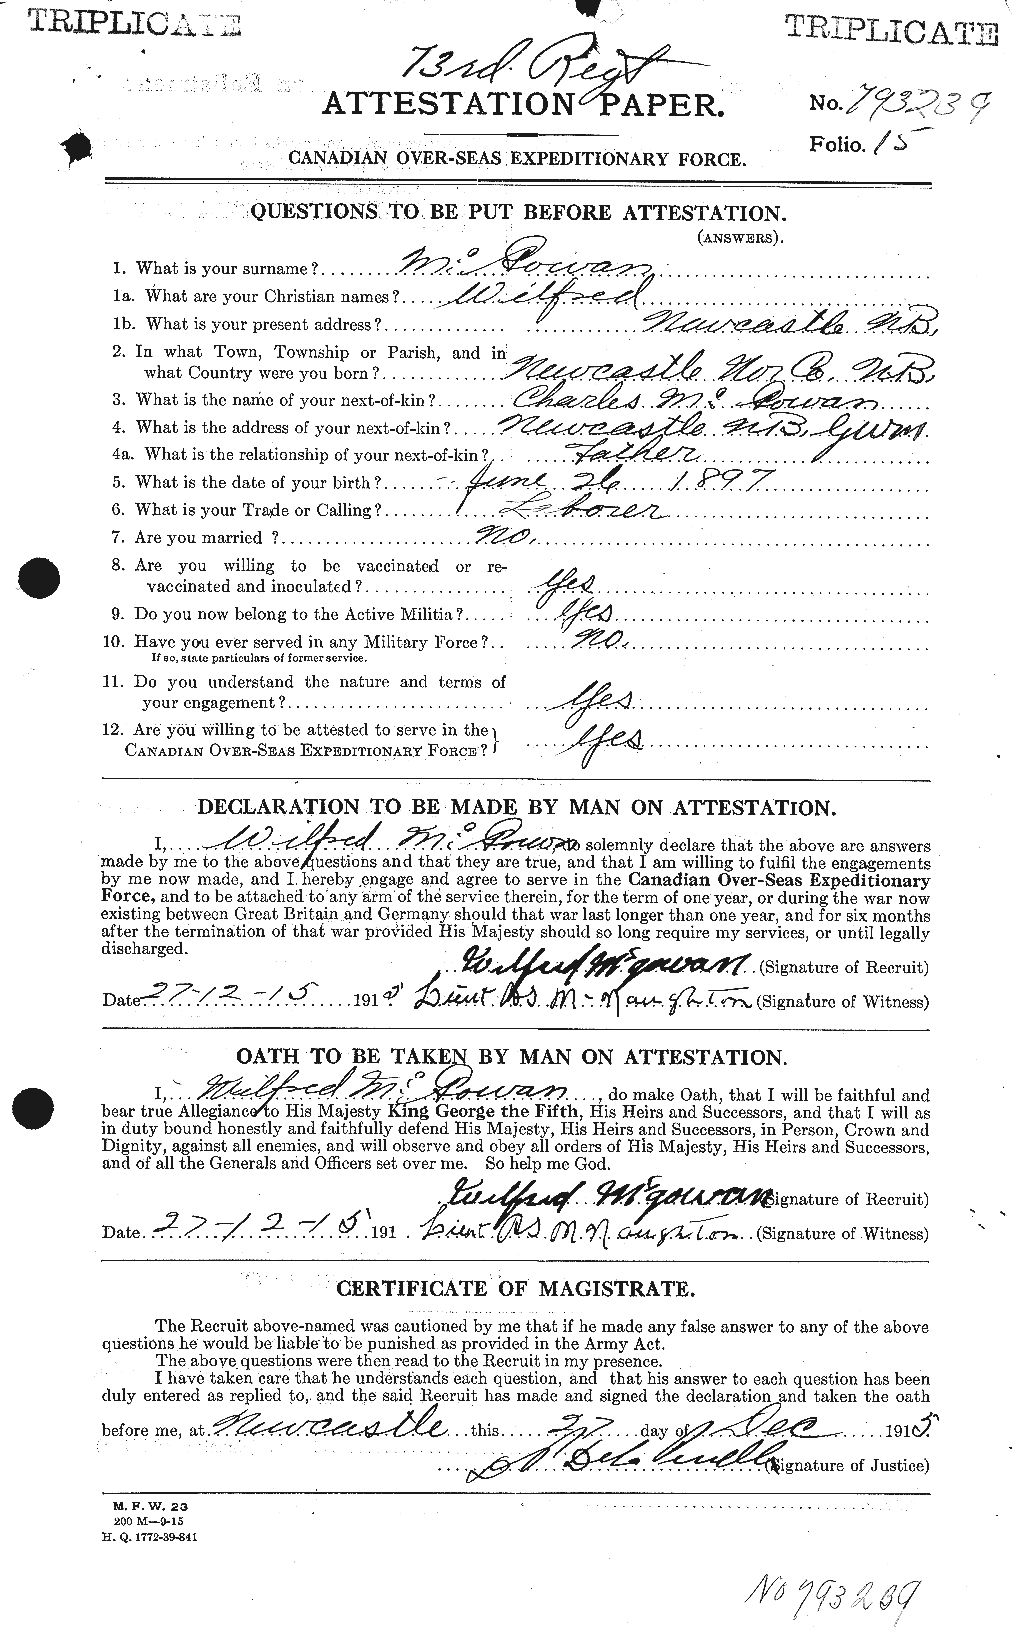 Dossiers du Personnel de la Première Guerre mondiale - CEC 523228a